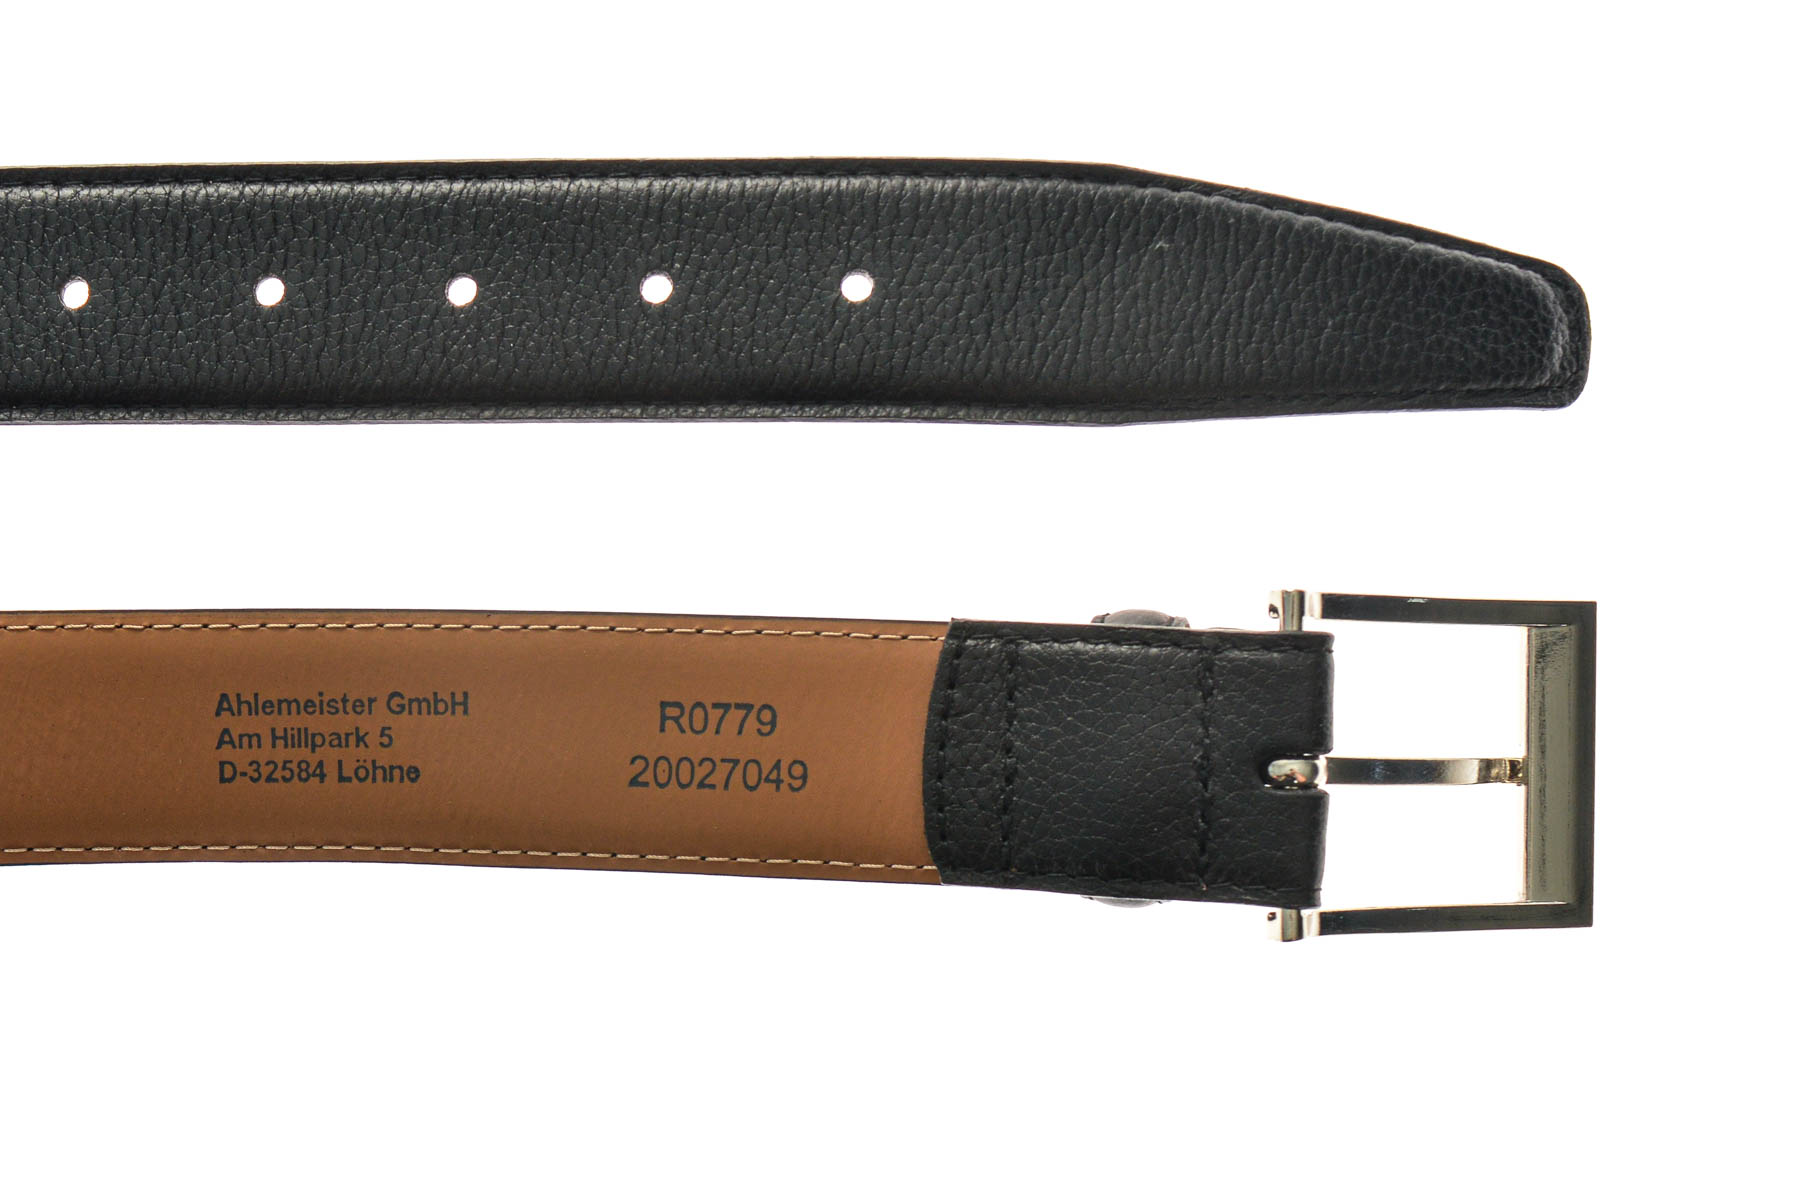 Men's belt - Ahlemeister GmbH - 2